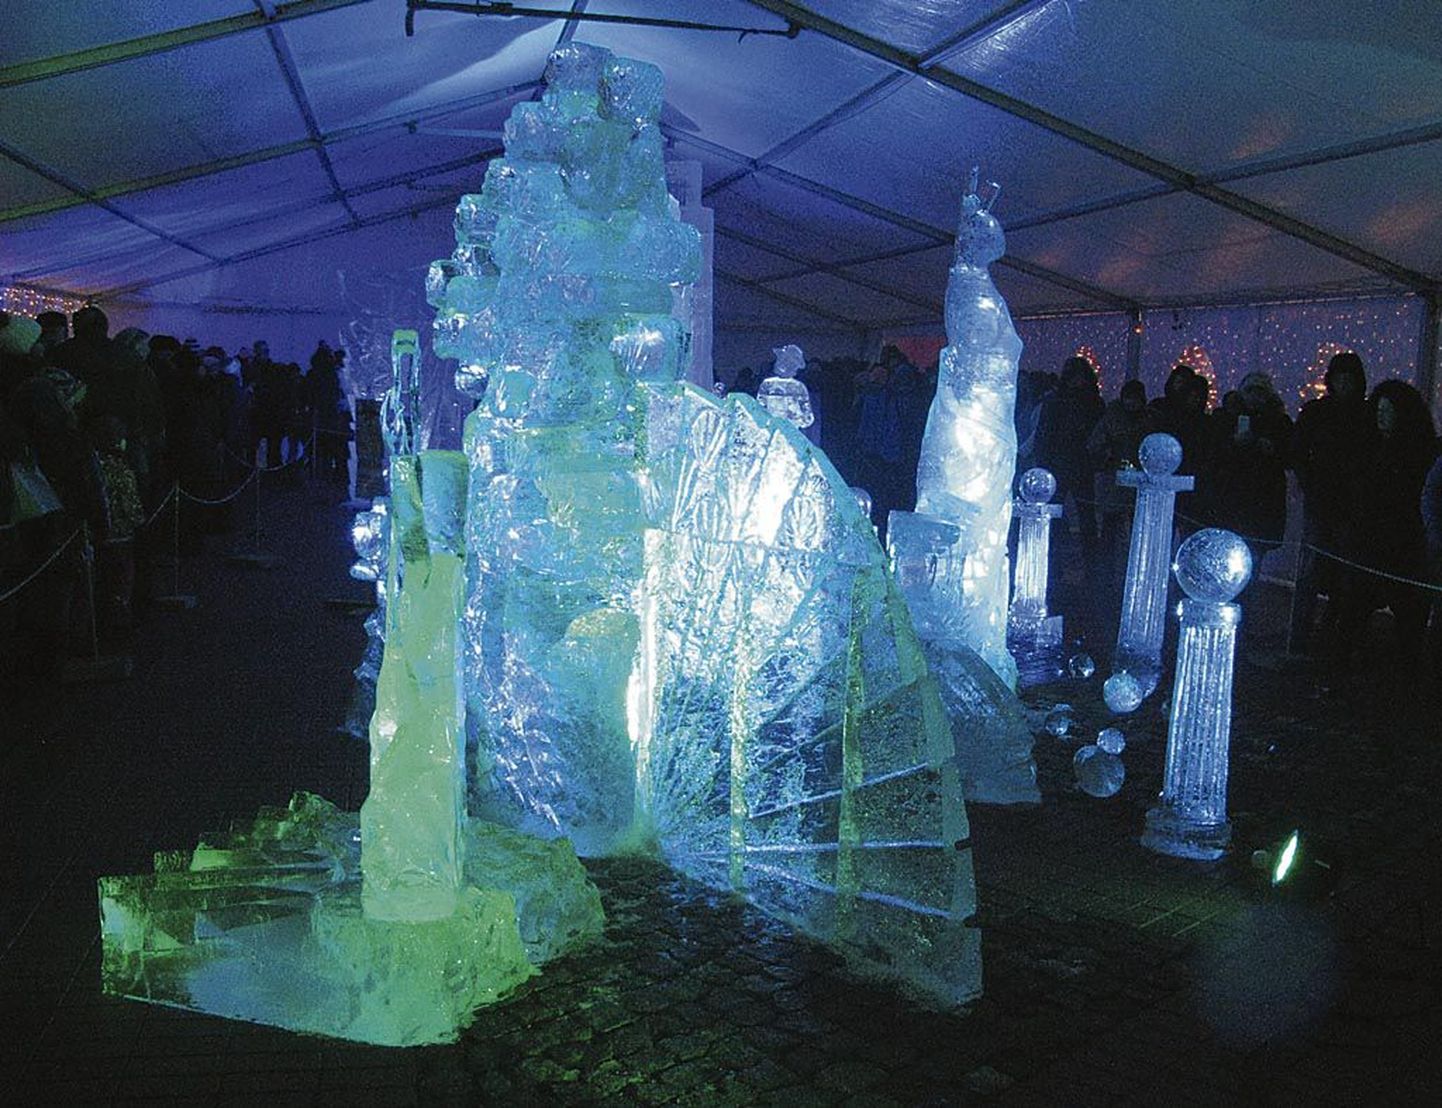 Teemat “Maailma imed” käsitleti jääskulptuuride festivalil erinevalt.